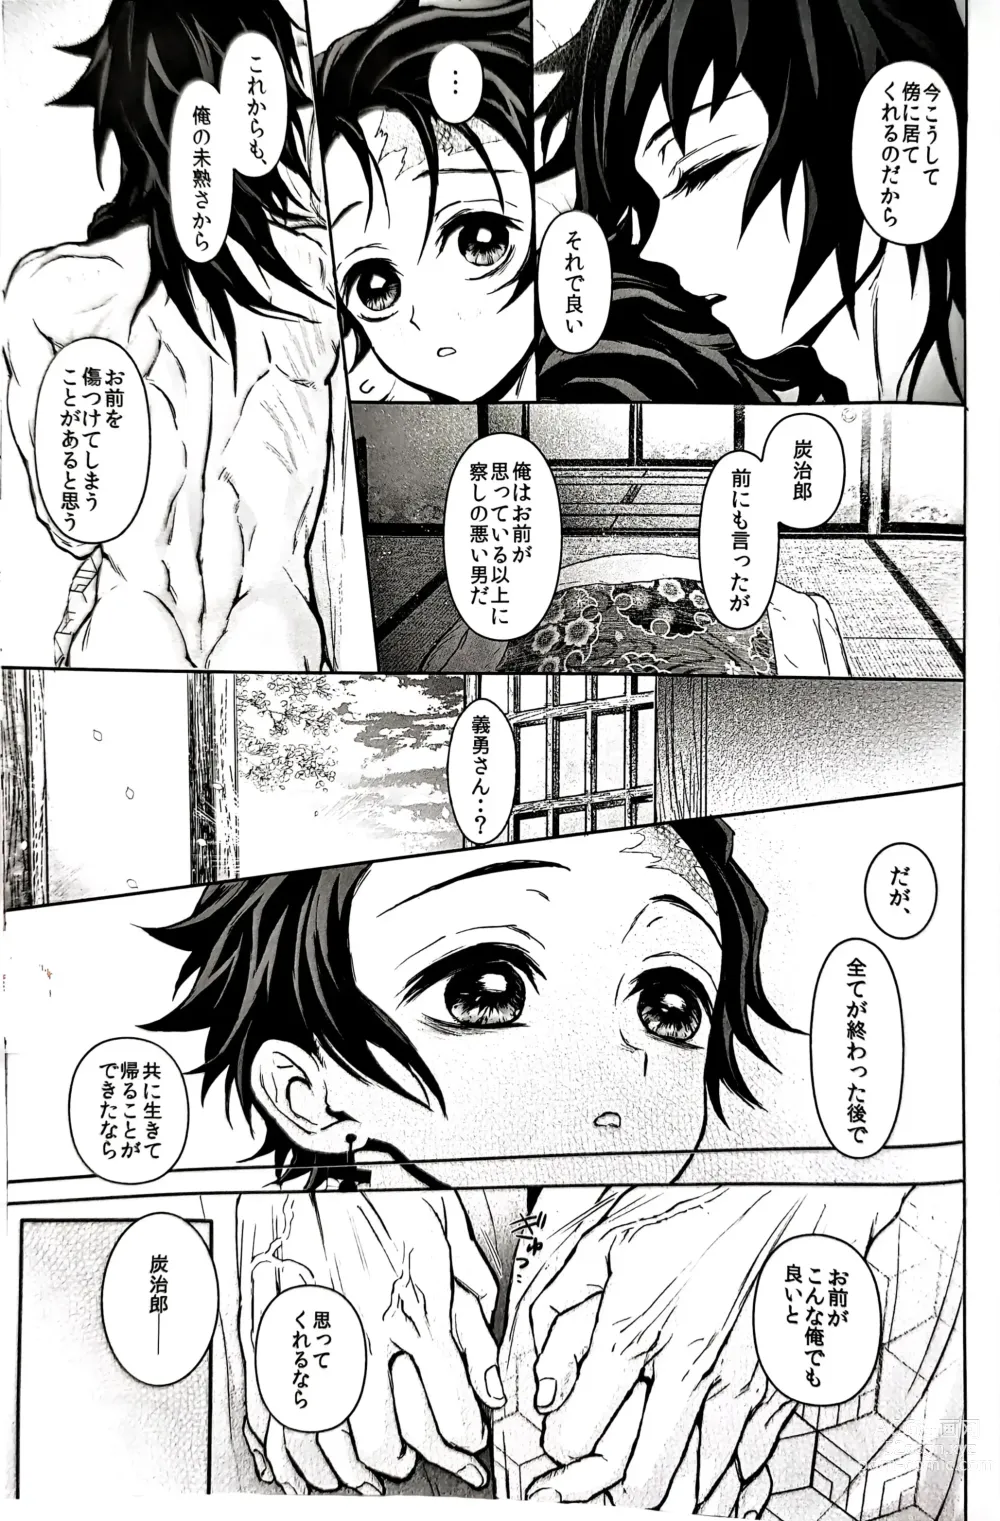 Page 90 of doujinshi Taitou Aishi